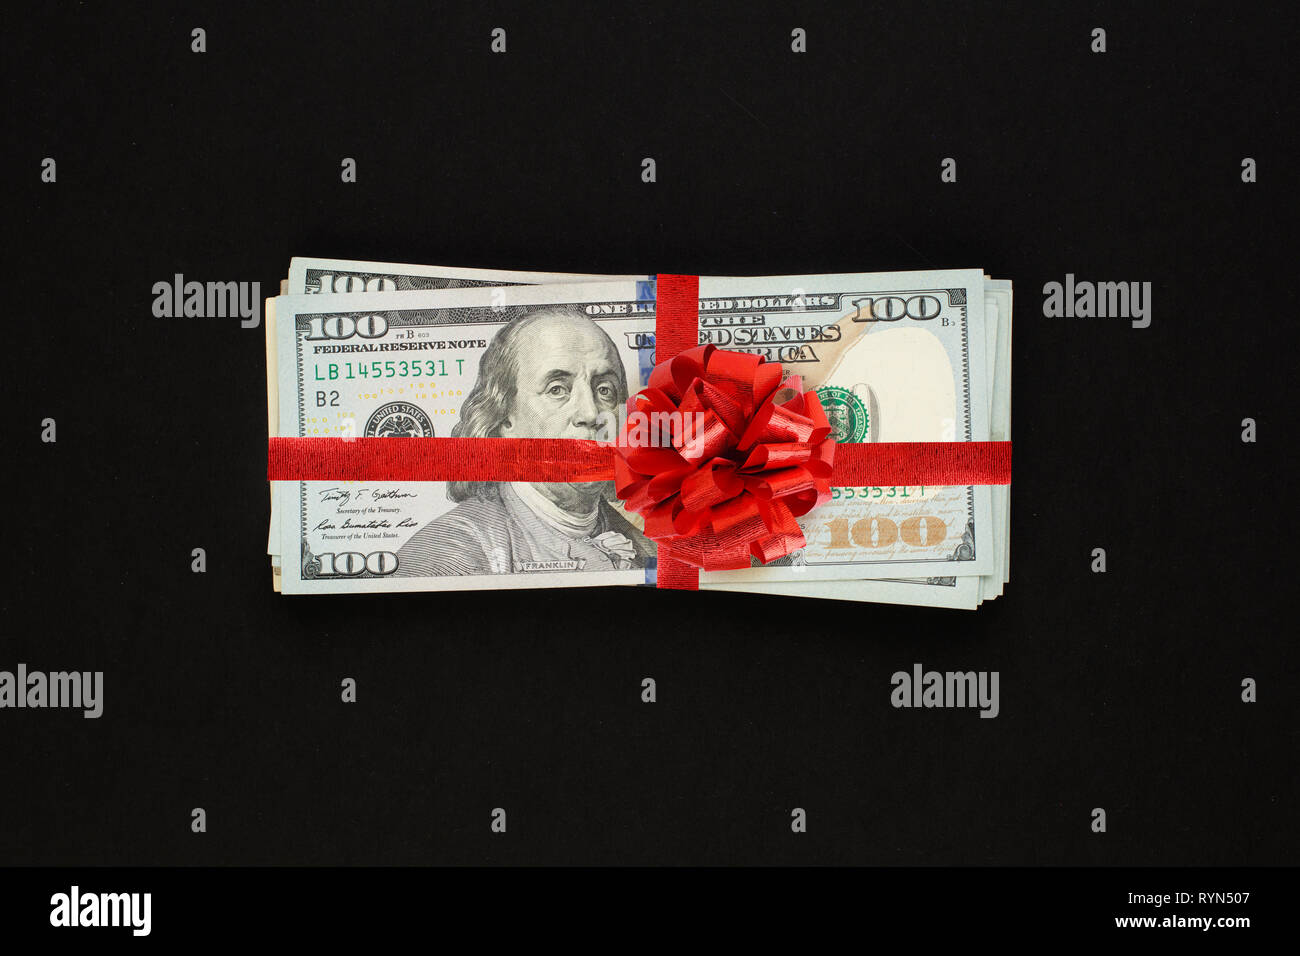 Geld us-Dollar cash Geschenk mit roter Schleife auf schwarzem Hintergrund. Amerikanischer Dollar 100 Banknoten Geschenk gewinn Konzept Stockfoto